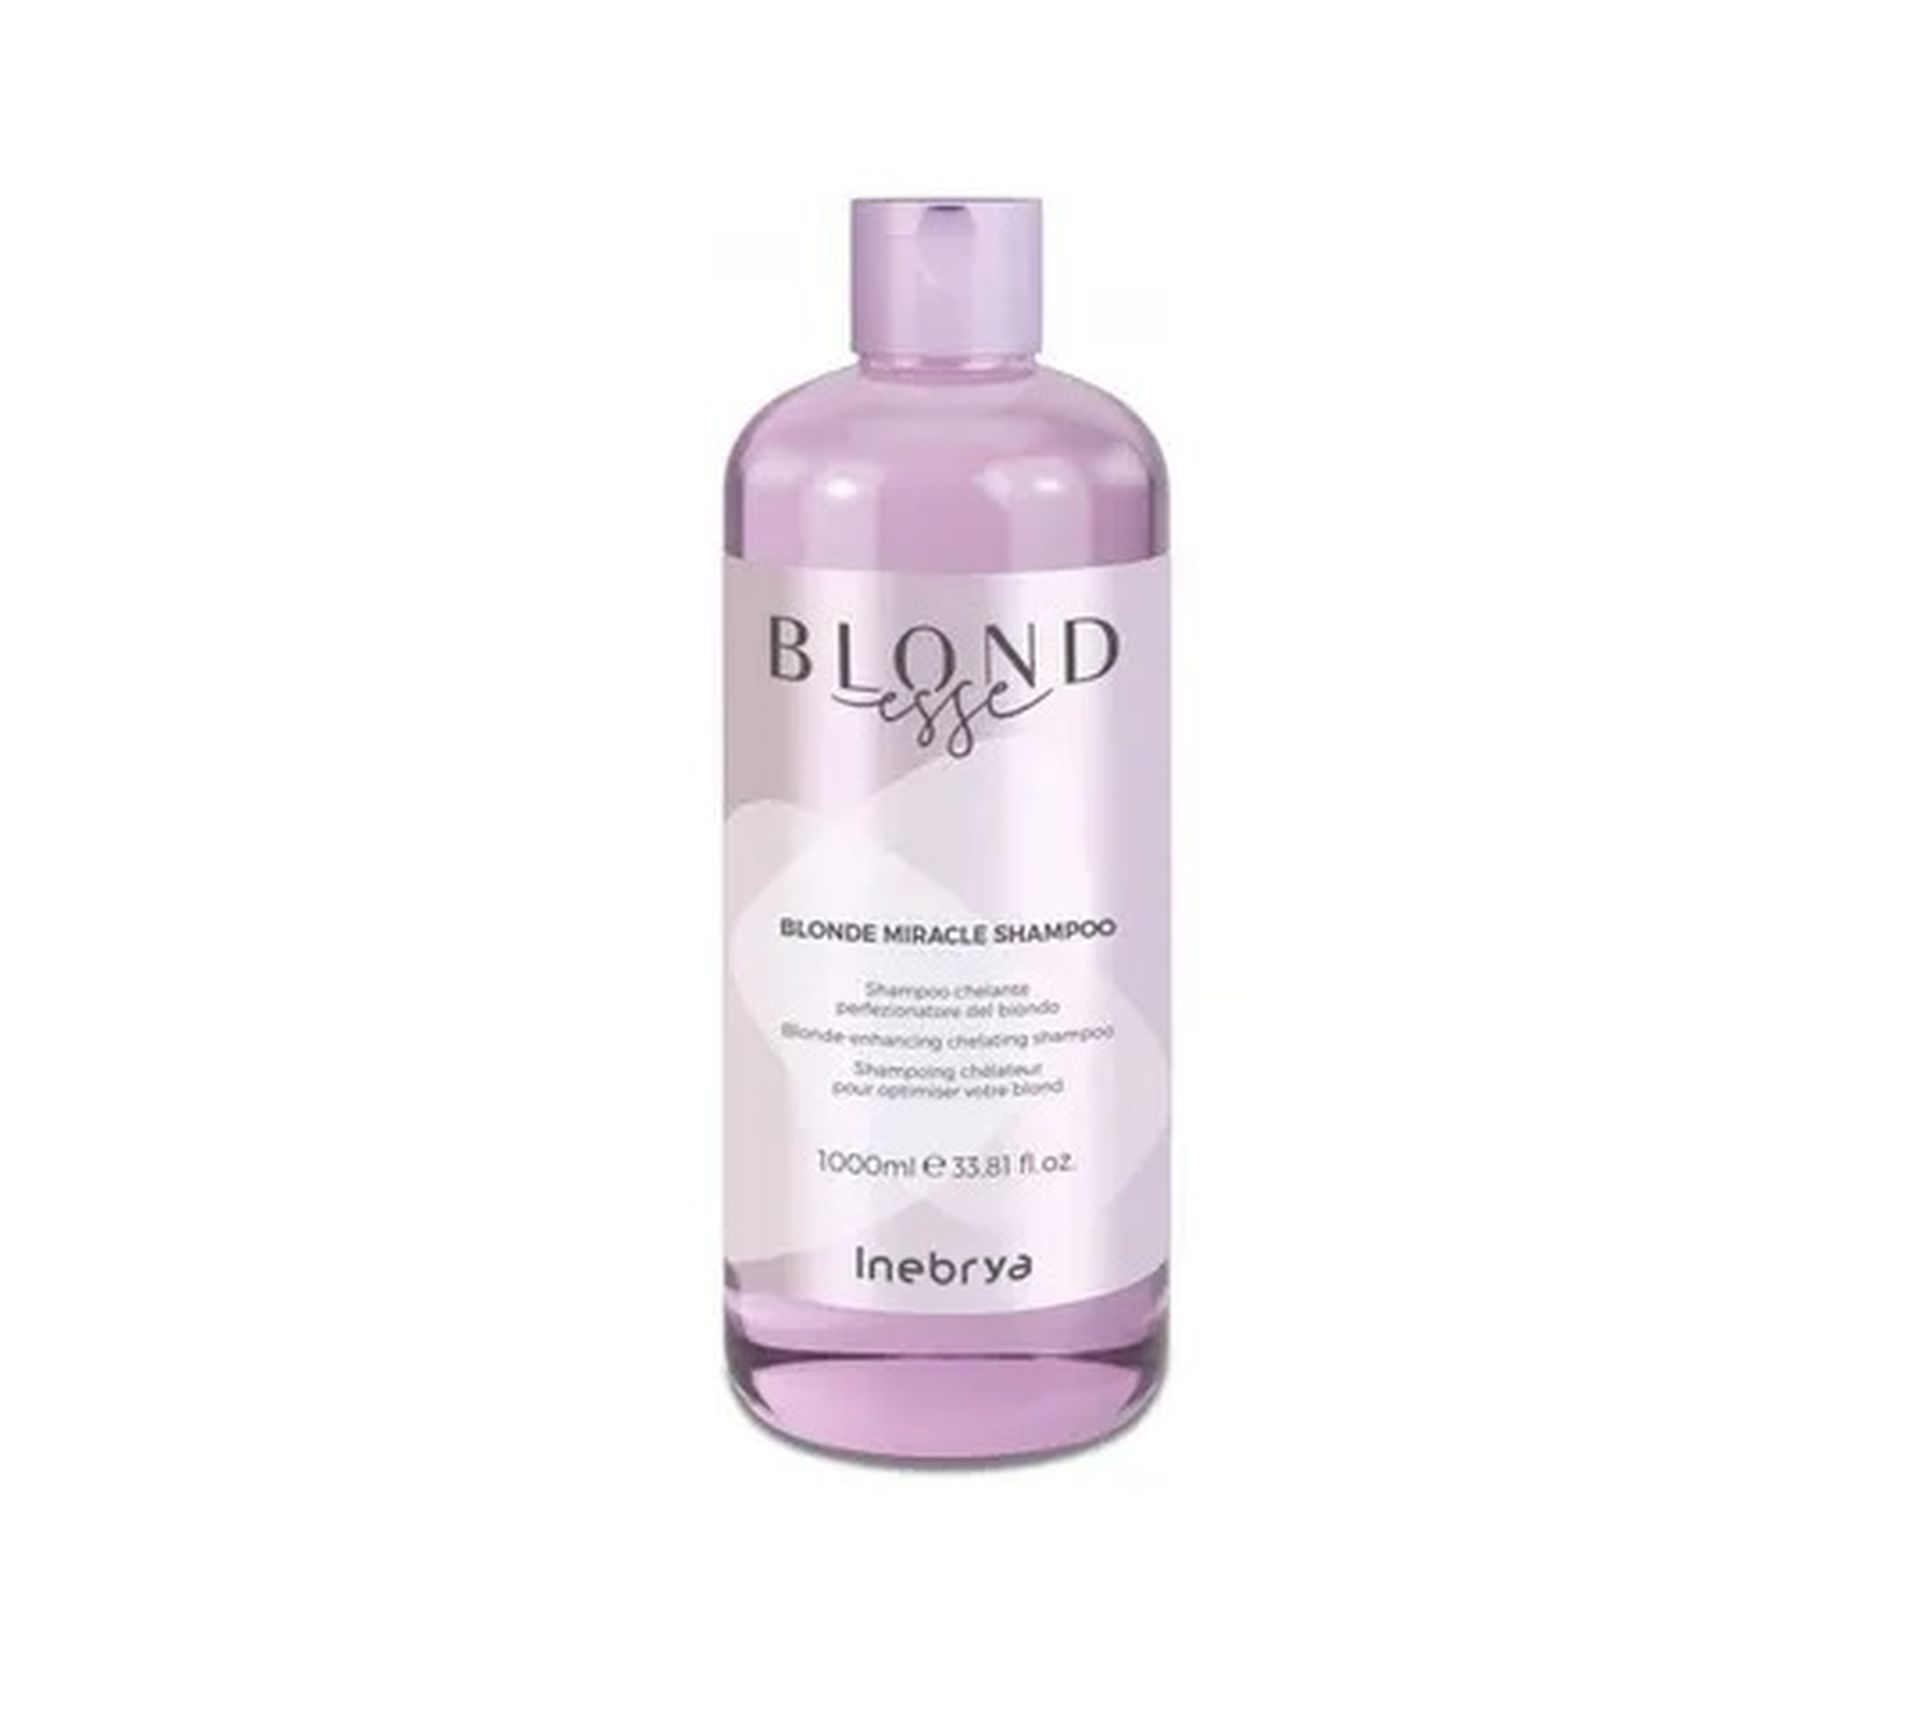 Inebrya Blondesse Blonde Miracle Shampoo odżywczy szampon do włosów blond (1000 ml)